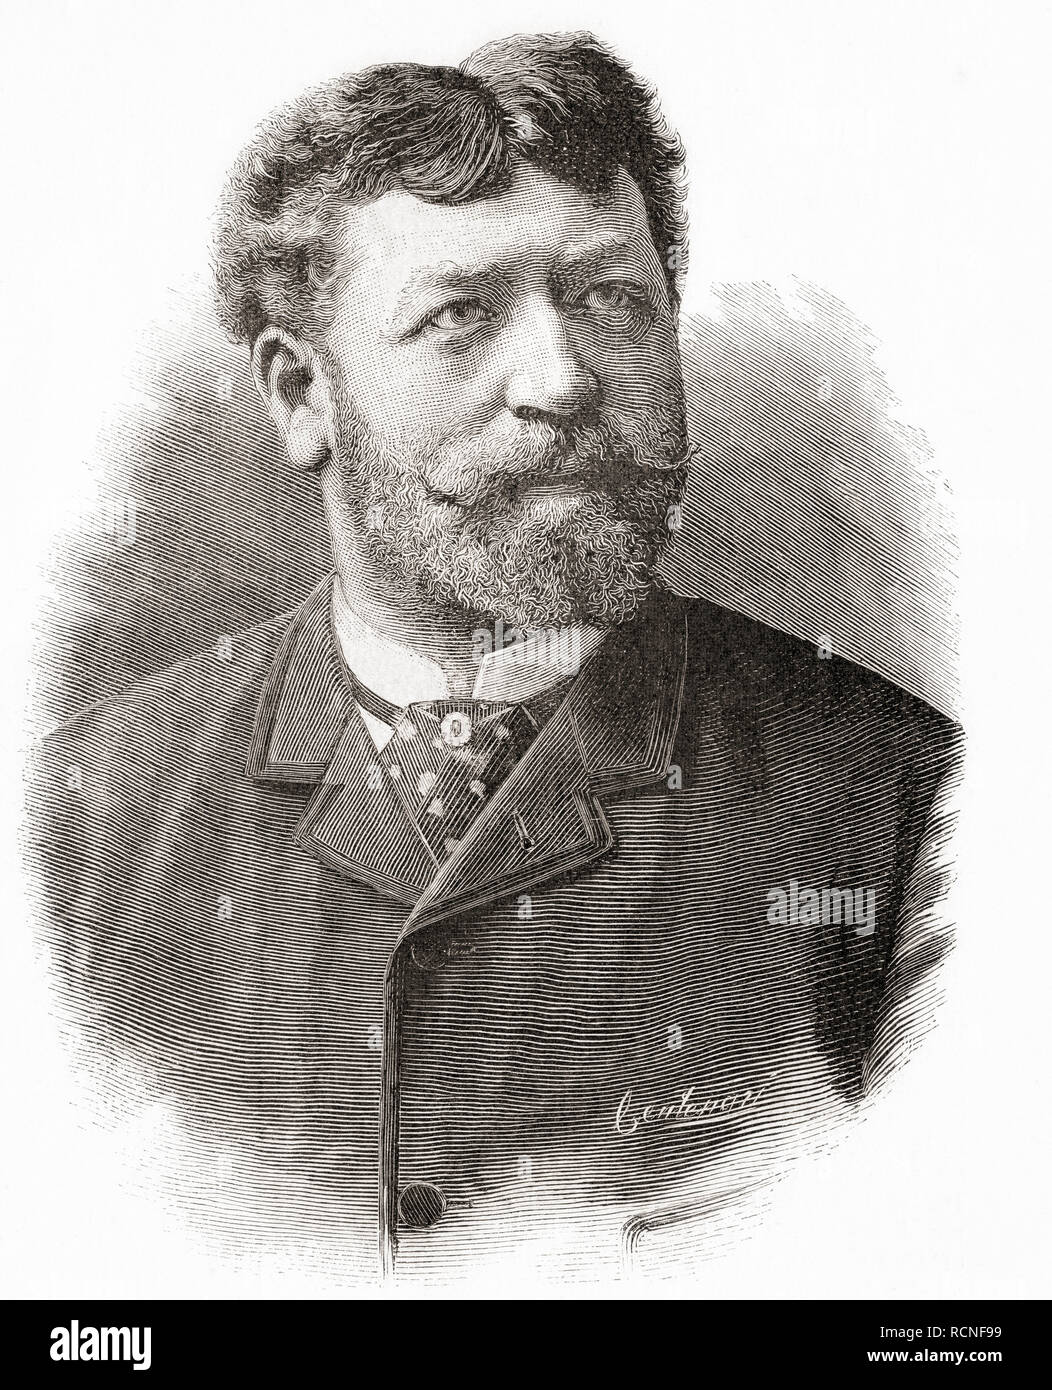 Francesco Tamagno, 1850 - 1905. Tenor lírico italiano. Desde la Ilustracion artistica, publicado el 1887. Foto de stock